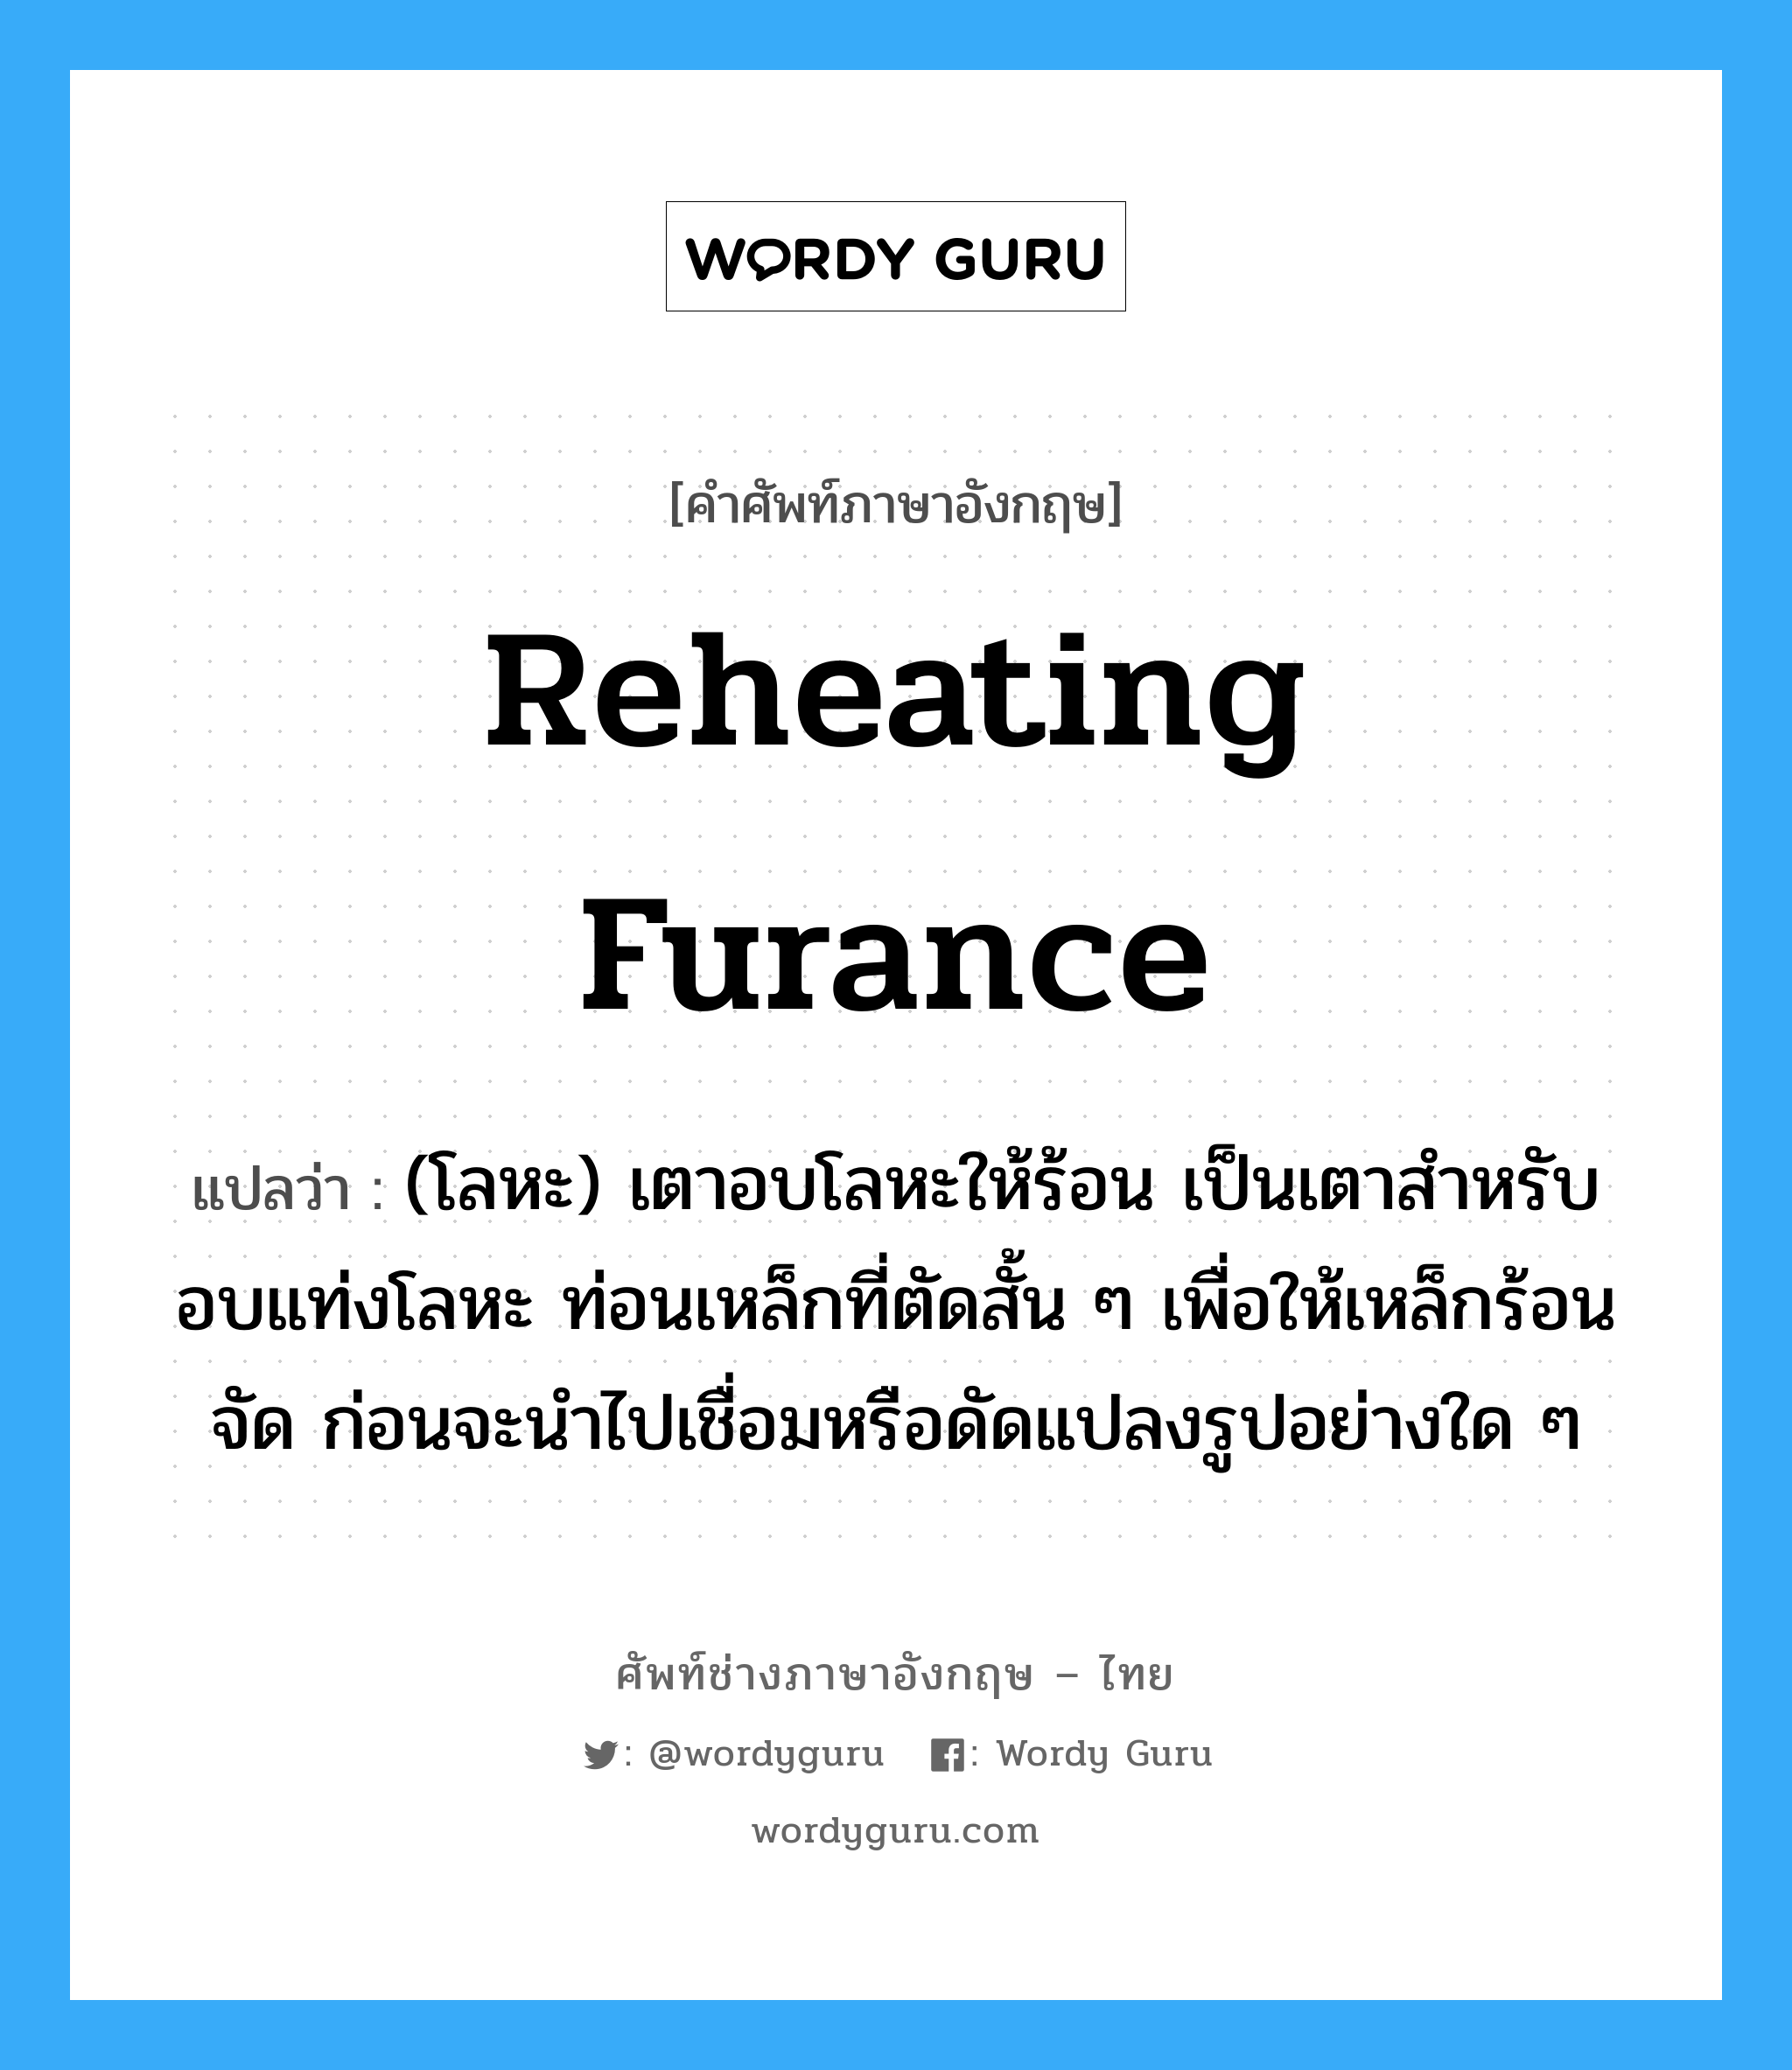 reheating furance แปลว่า?, คำศัพท์ช่างภาษาอังกฤษ - ไทย reheating furance คำศัพท์ภาษาอังกฤษ reheating furance แปลว่า (โลหะ) เตาอบโลหะให้ร้อน เป็นเตาสำหรับอบแท่งโลหะ ท่อนเหล็กที่ตัดสั้น ๆ เพื่อให้เหล็กร้อนจัด ก่อนจะนำไปเชื่อมหรือดัดแปลงรูปอย่างใด ๆ